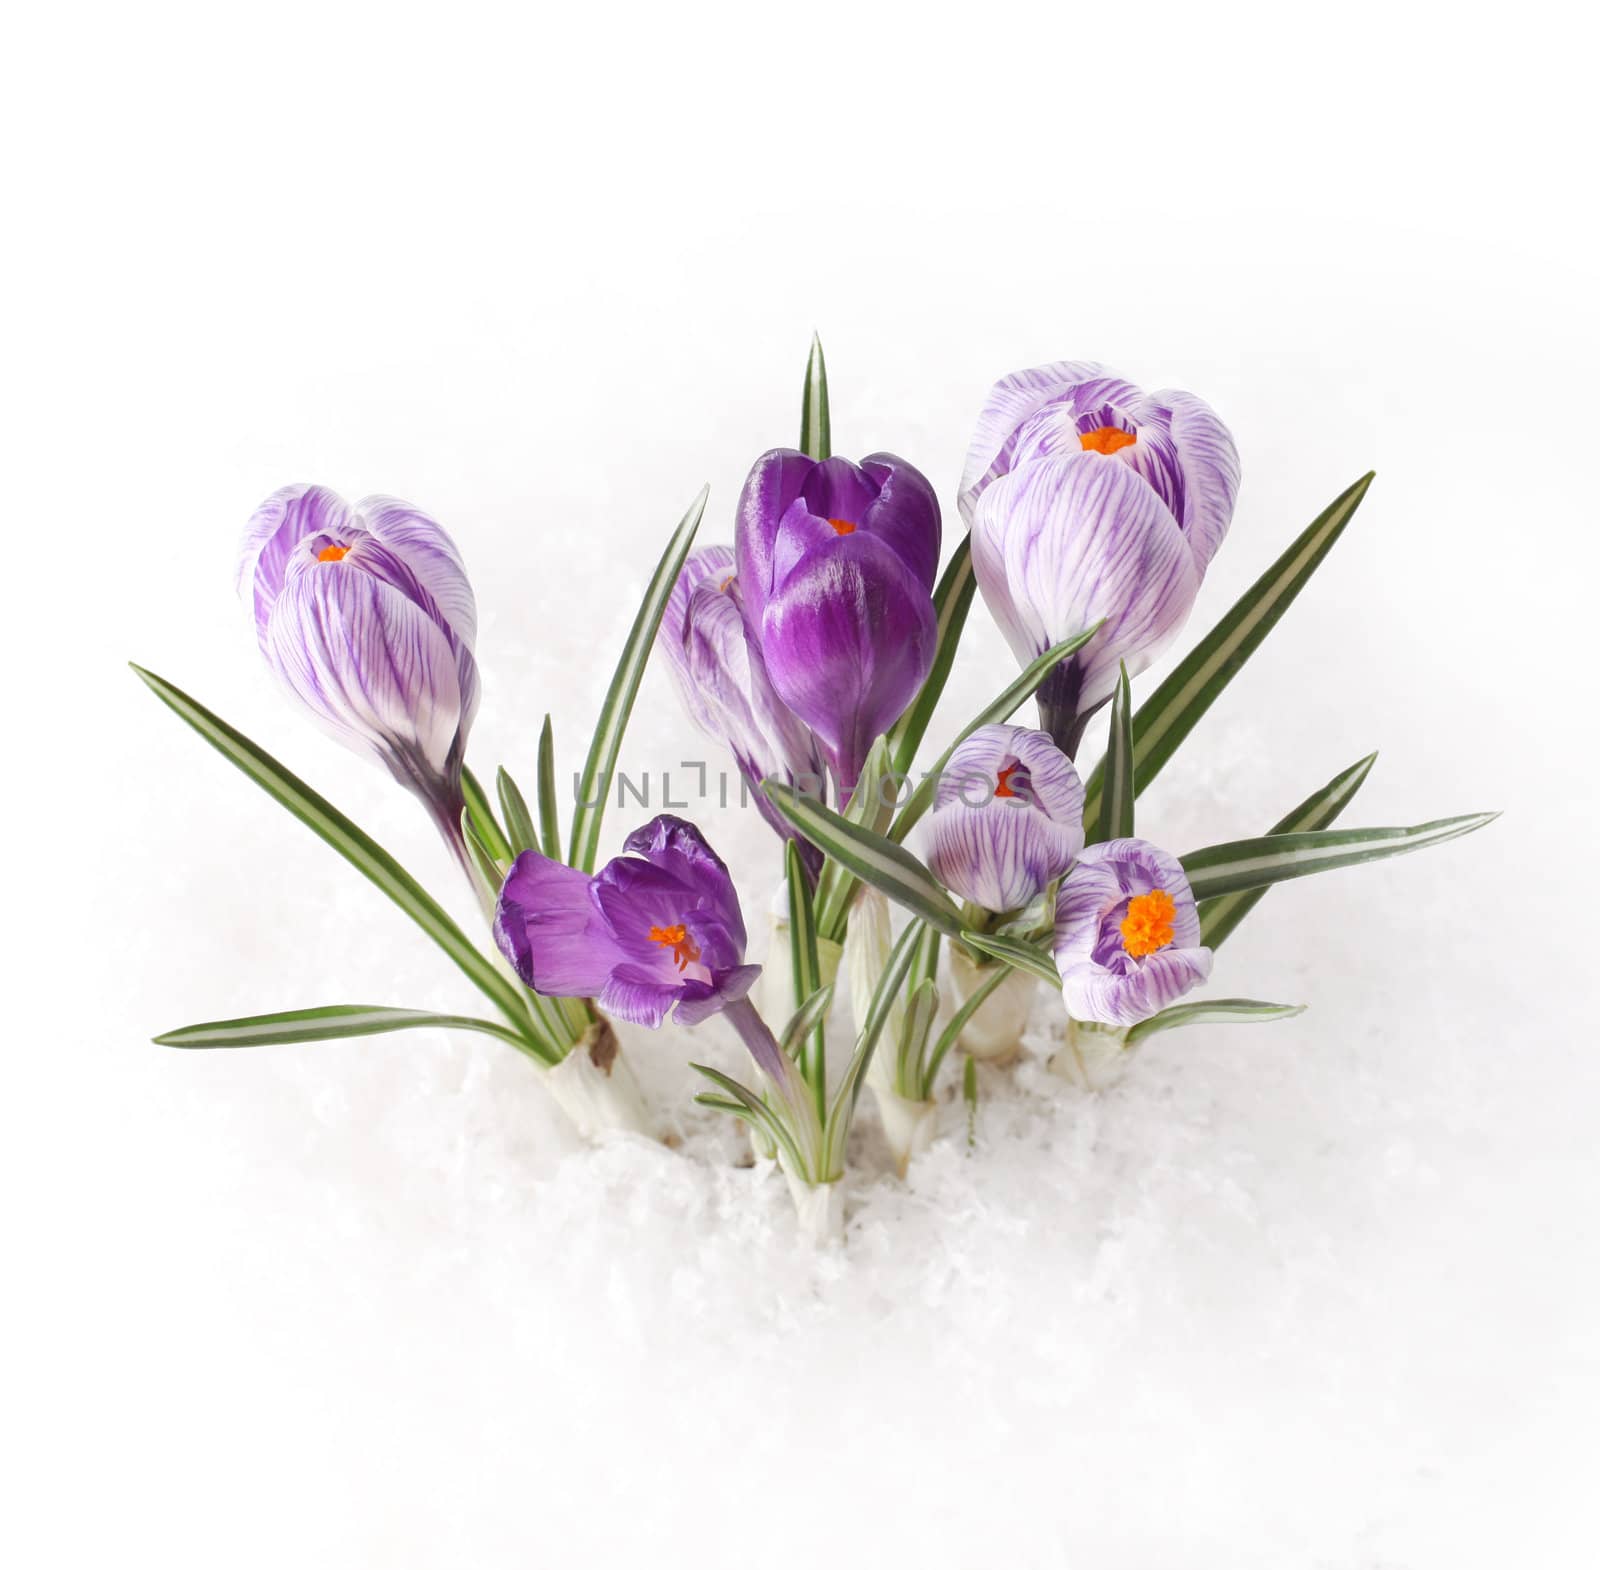 spring flower in snow by rudchenko